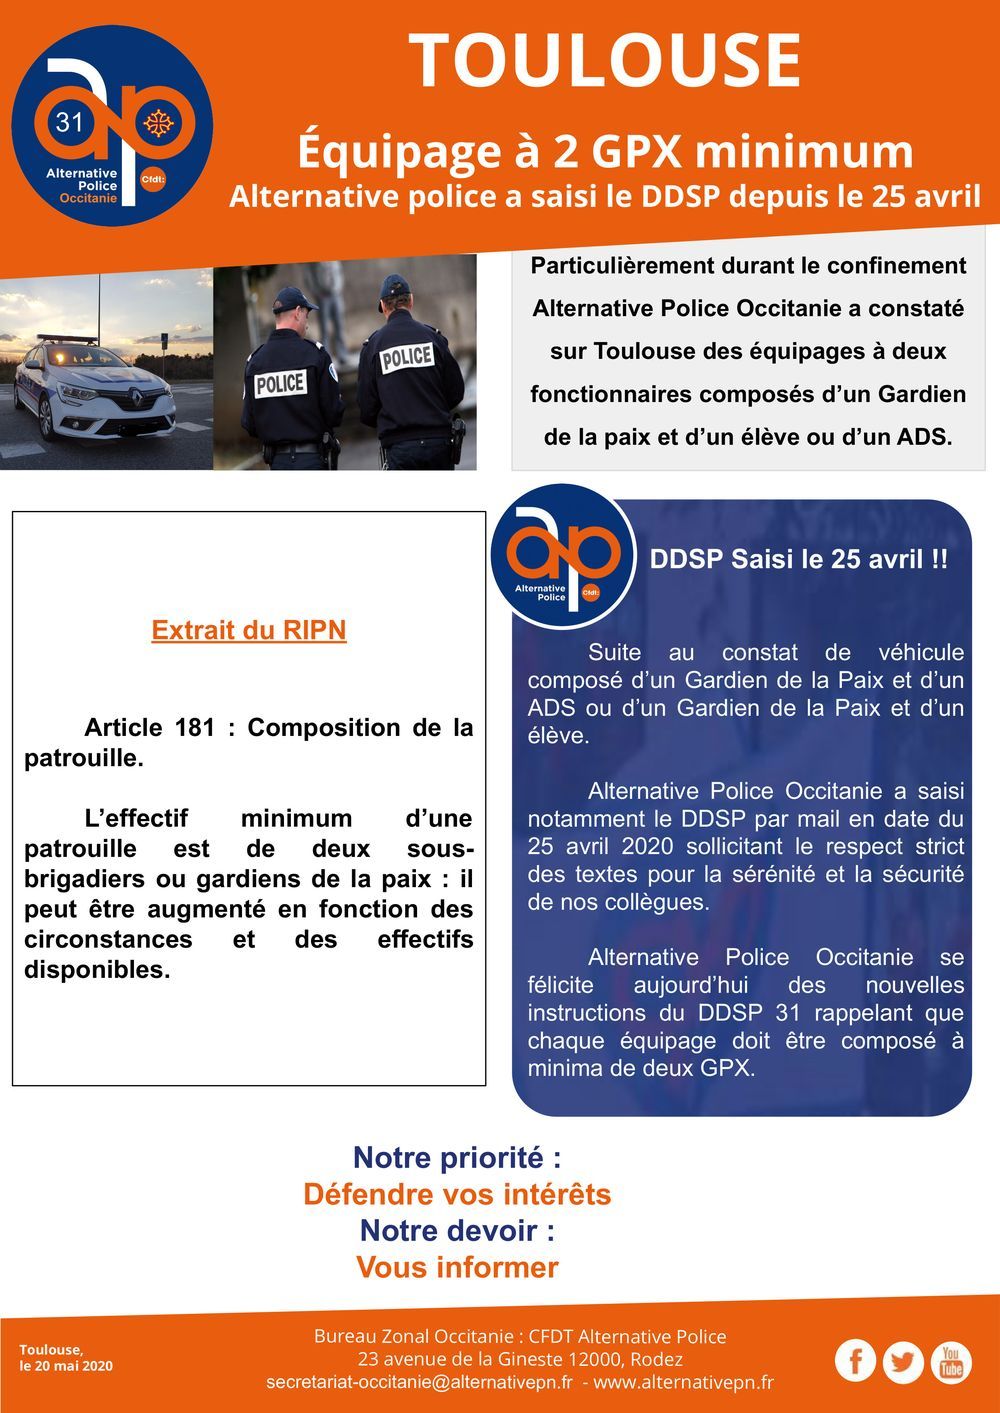 Toulouse : Équipage à 2 GPX MINIMUM ! Le DDSP saisit le 25 avril 2020